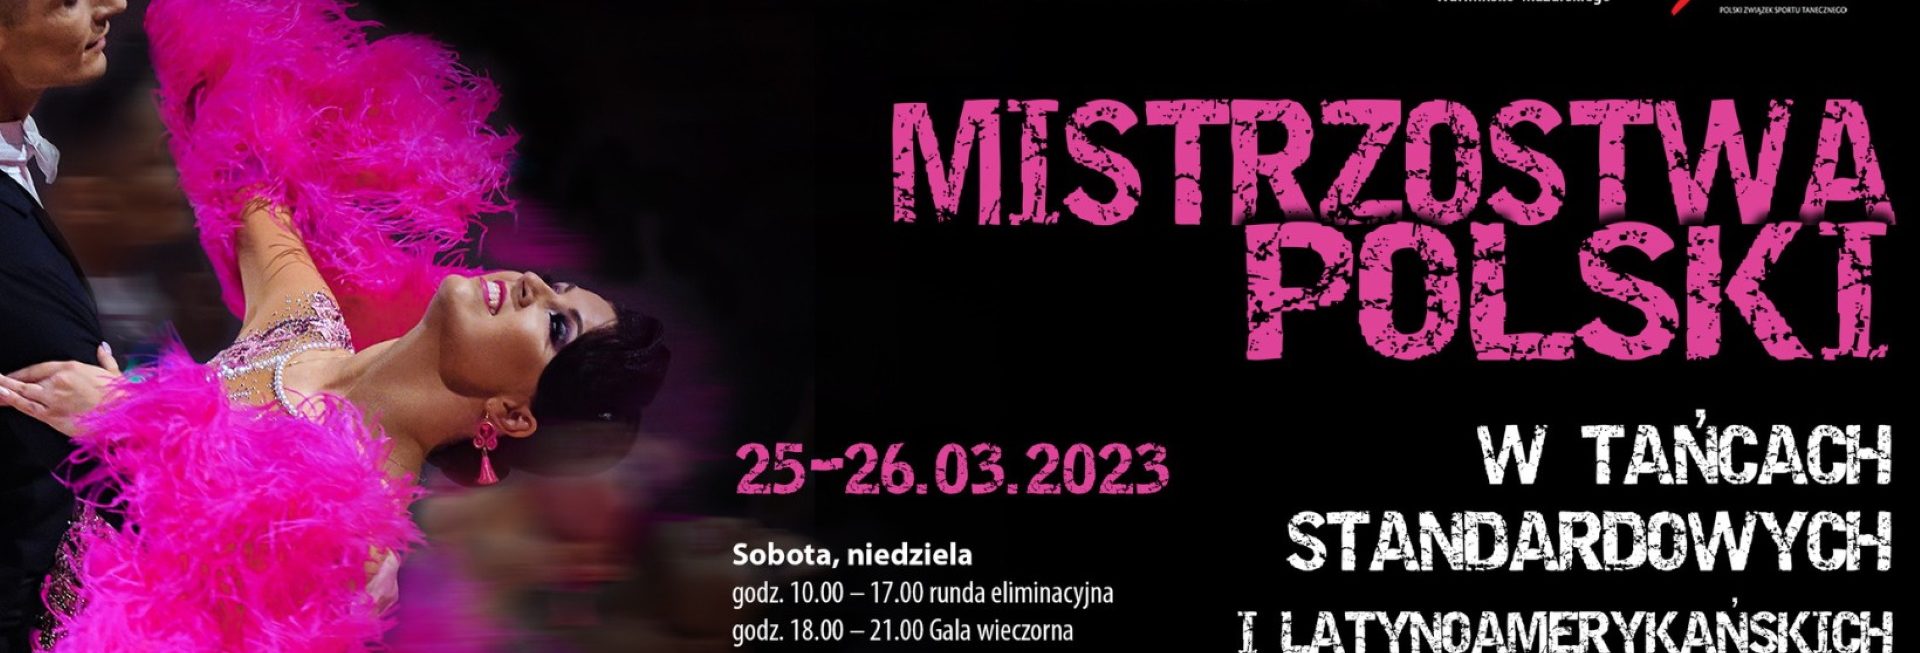 Plakat zapraszający w dniach 25-26 marca 2023 r. do Elbląga na Mistrzostwa Polski w Tańcach Standardowych i Latynoamerykańskich Elbląg 2023.